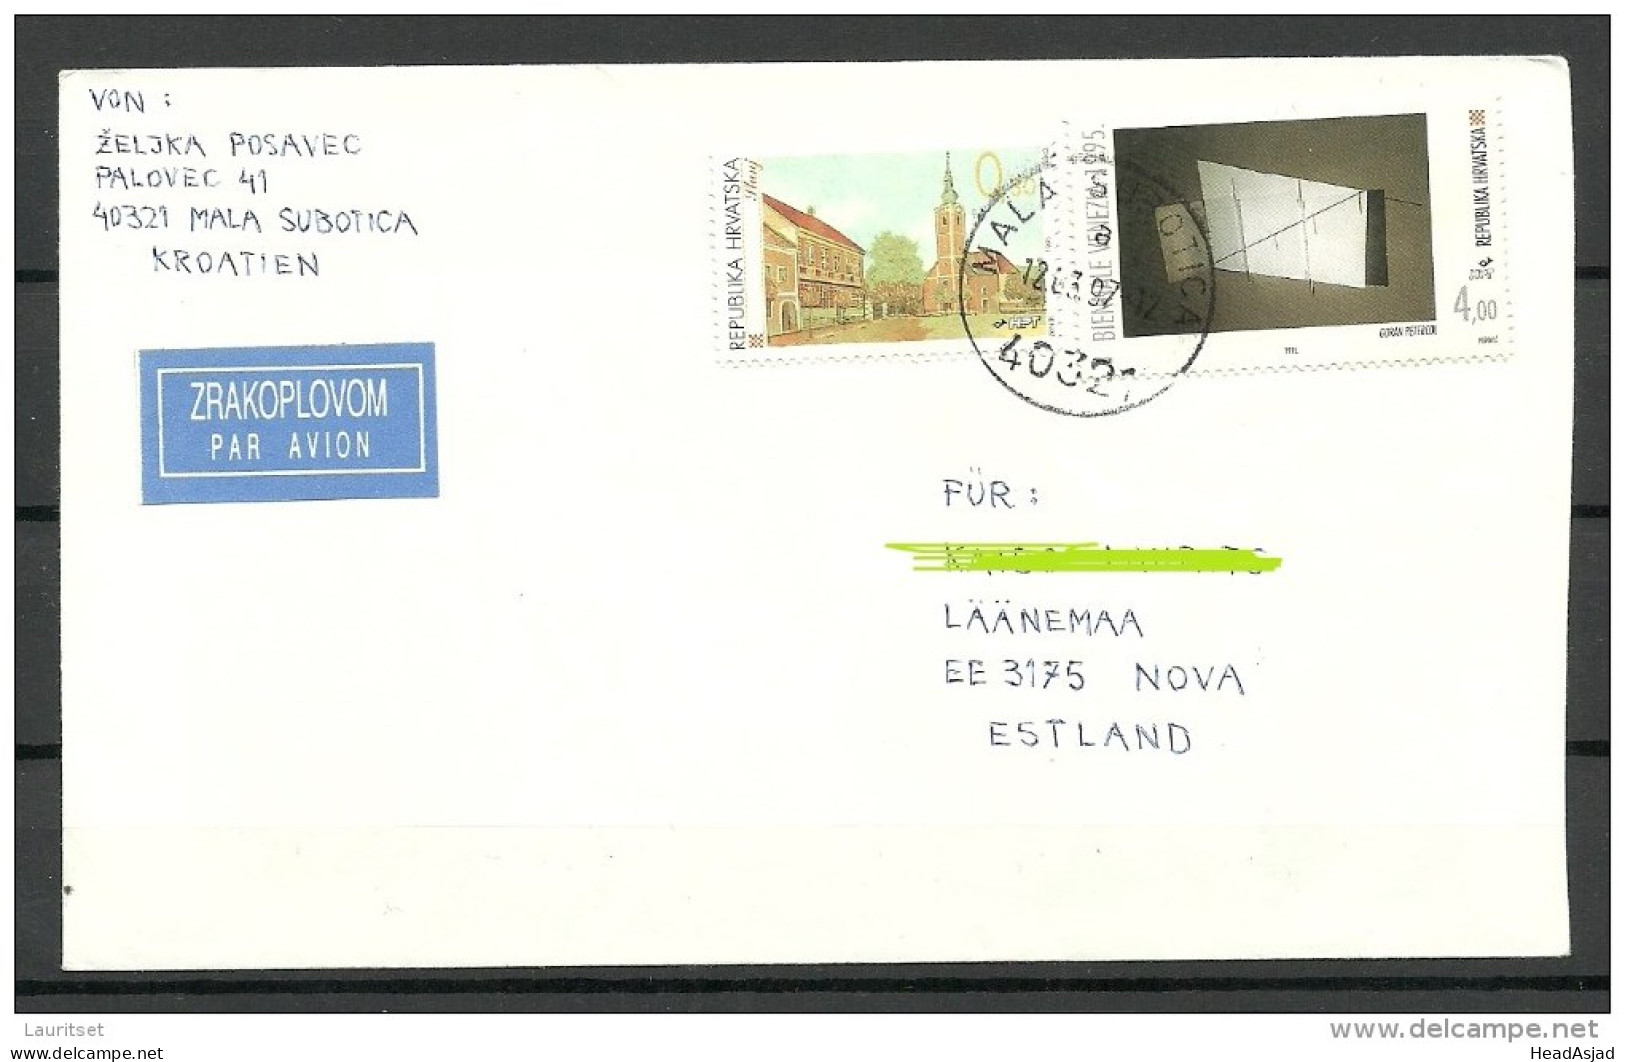 CROATIA HORVATIA Hrvatska 1997 Air Mail Cover To Estonia Estland - Croatia